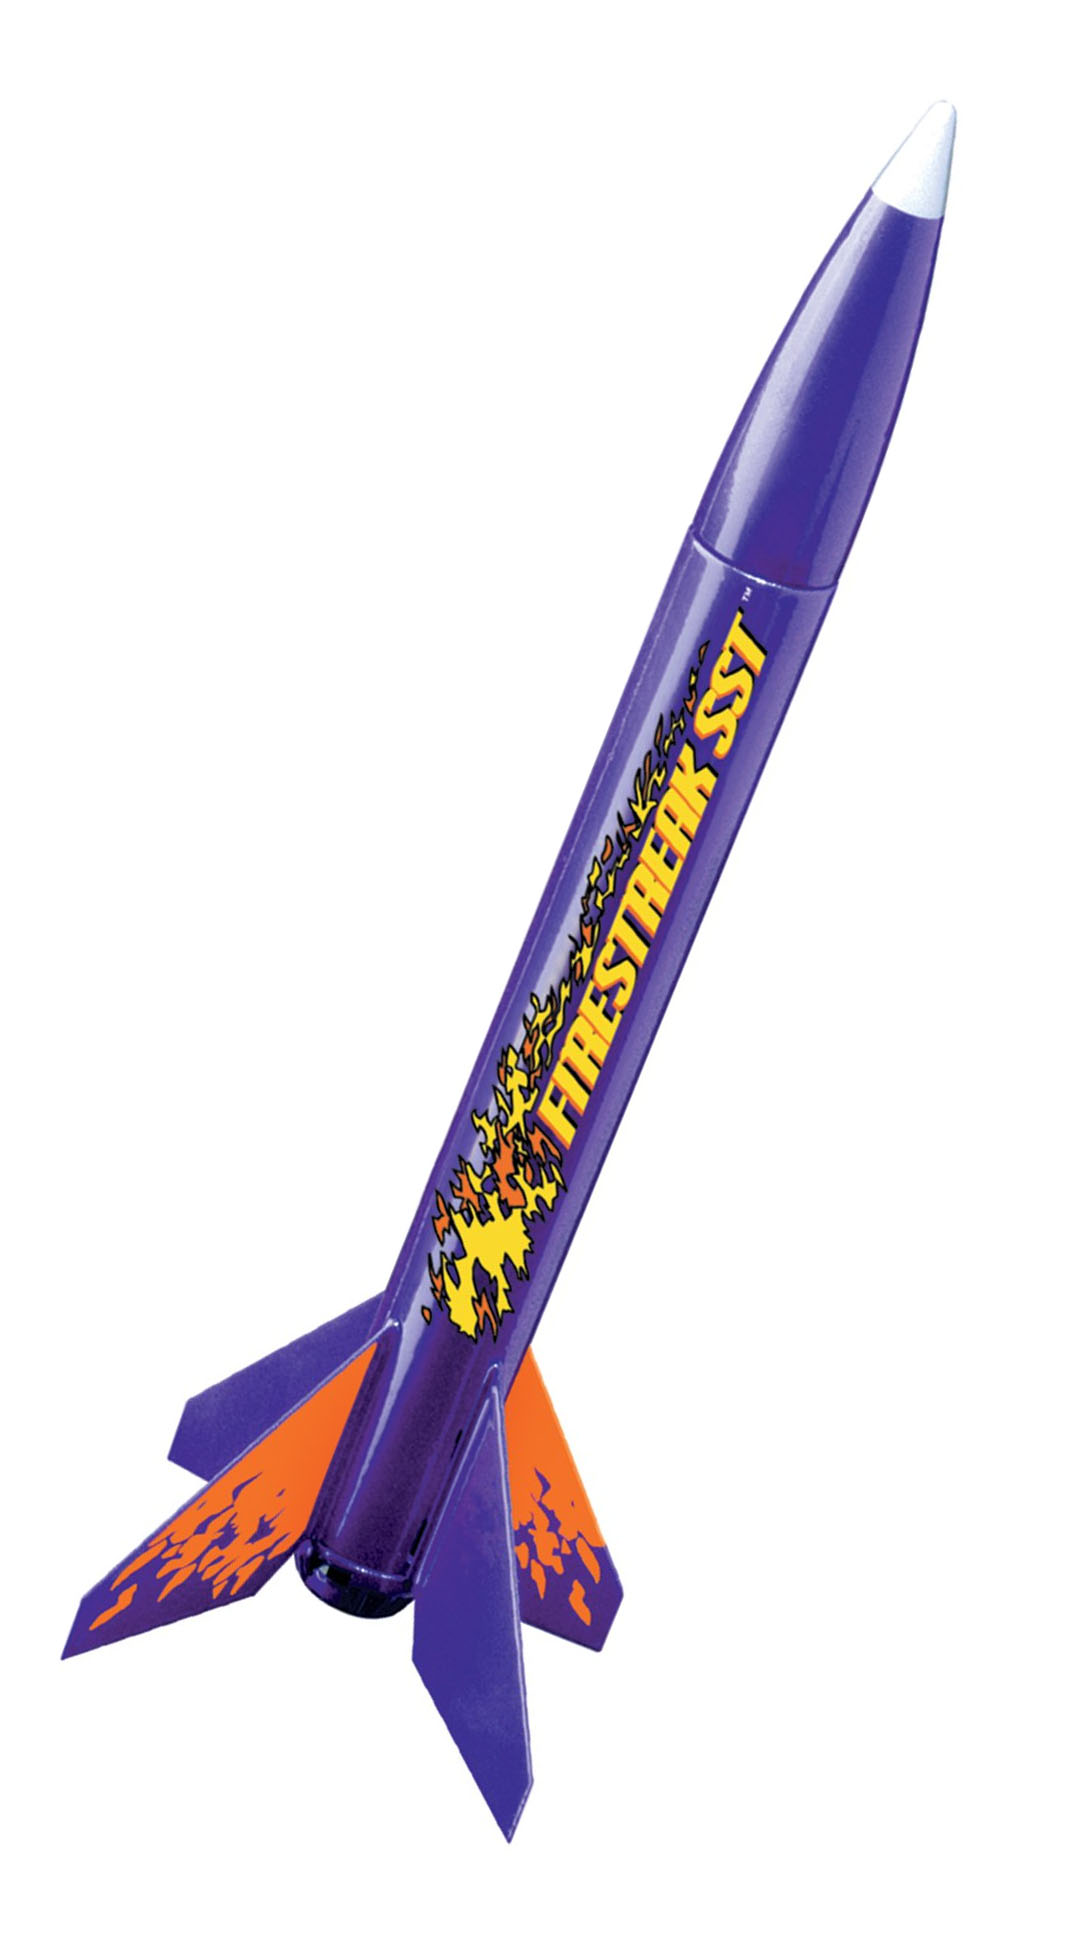 Estes 0806 Firestreak SST Flying Model Rocket 